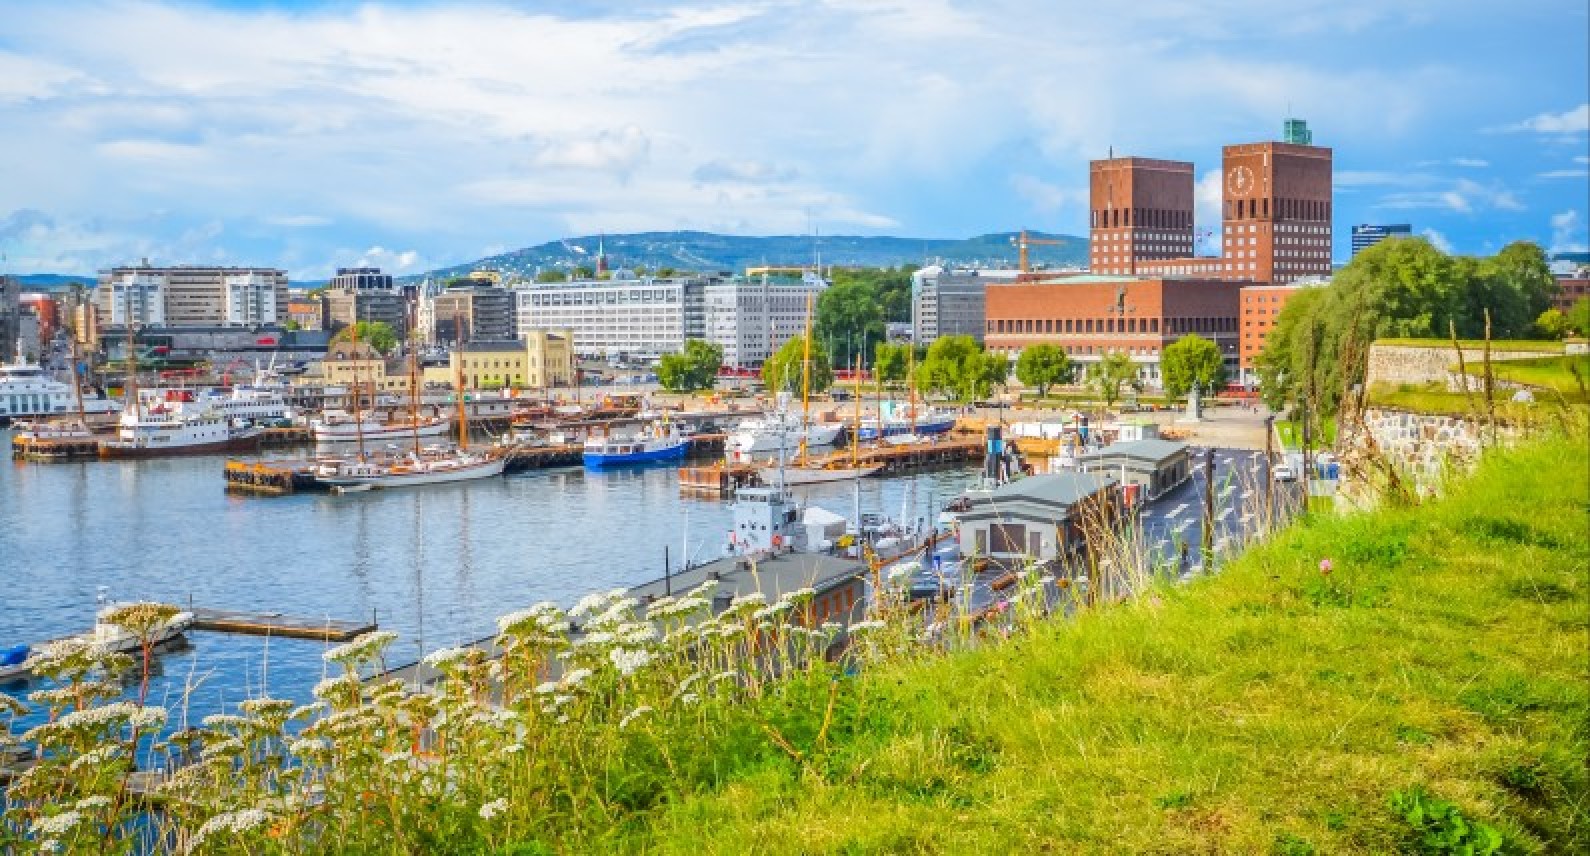 Duży wzrost zakażeń koronawirusem: Oslo wciąż na czele nowych zachorowań